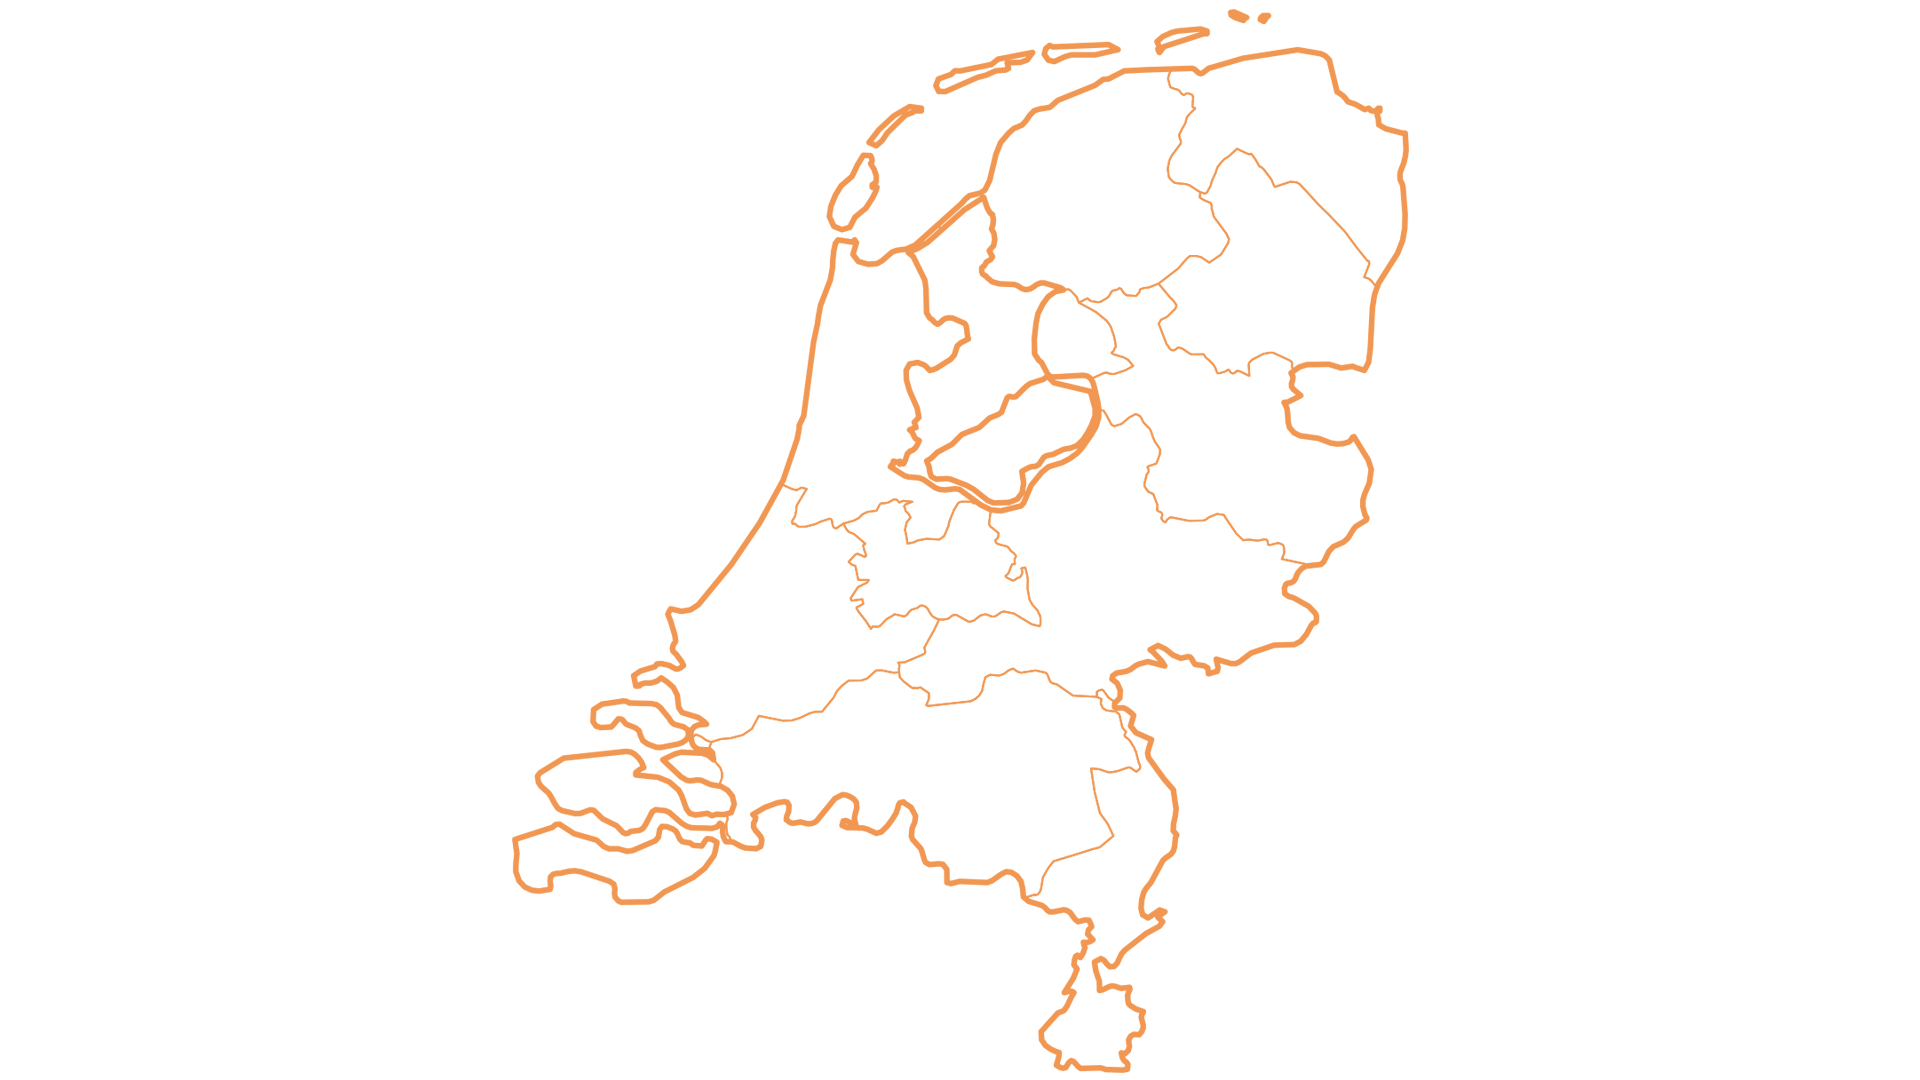 Ver weg vuurwerk agenda Nijwald | Kaart Nederland — Nijwald | The technology family